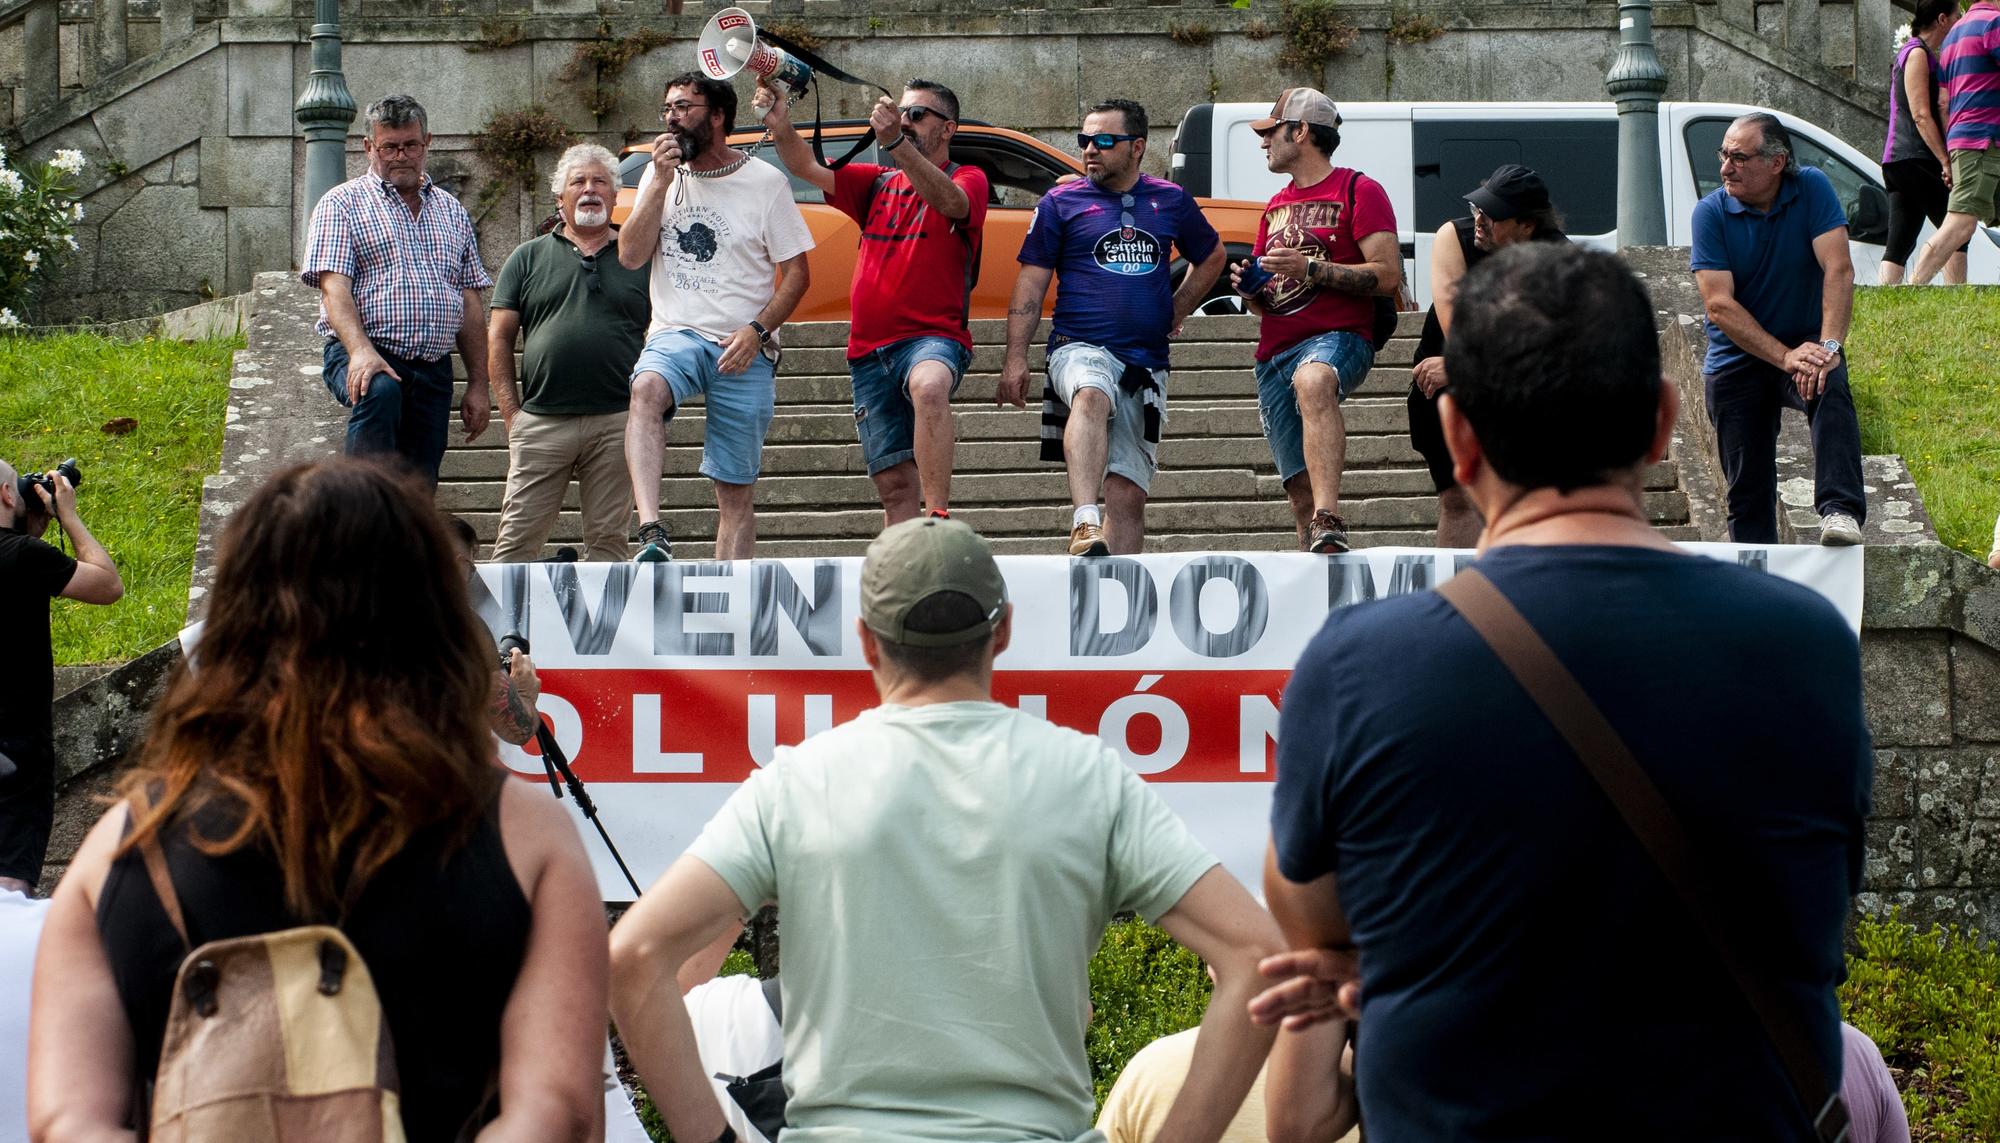 Cuarto día de folga do sector do metal en Pontevedra - 15